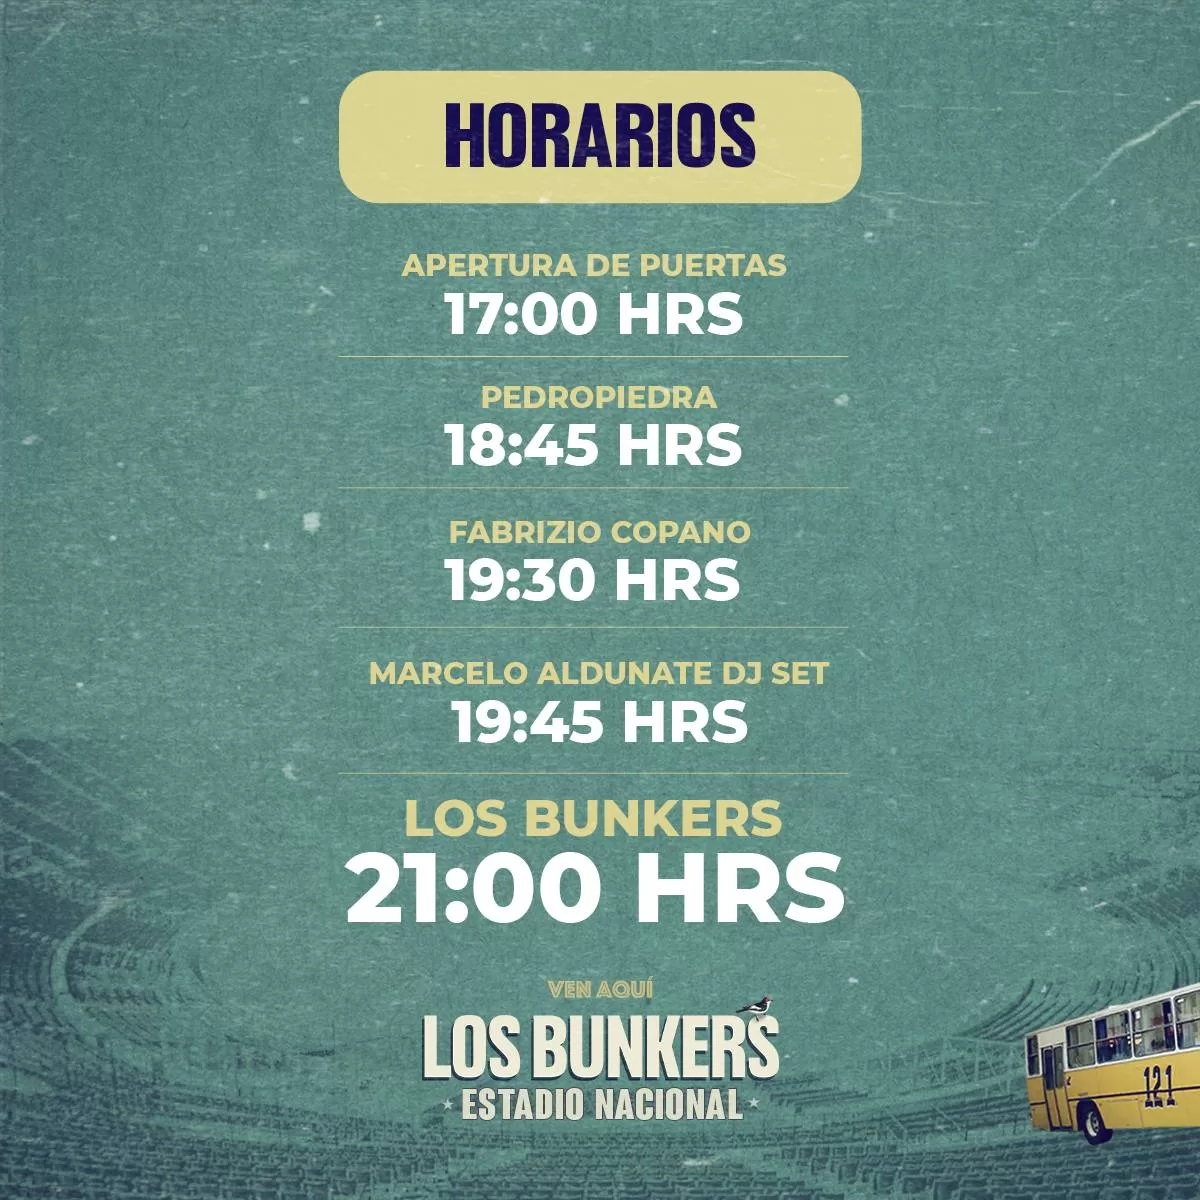 Horarios Los Bunkers Estadio Nacional